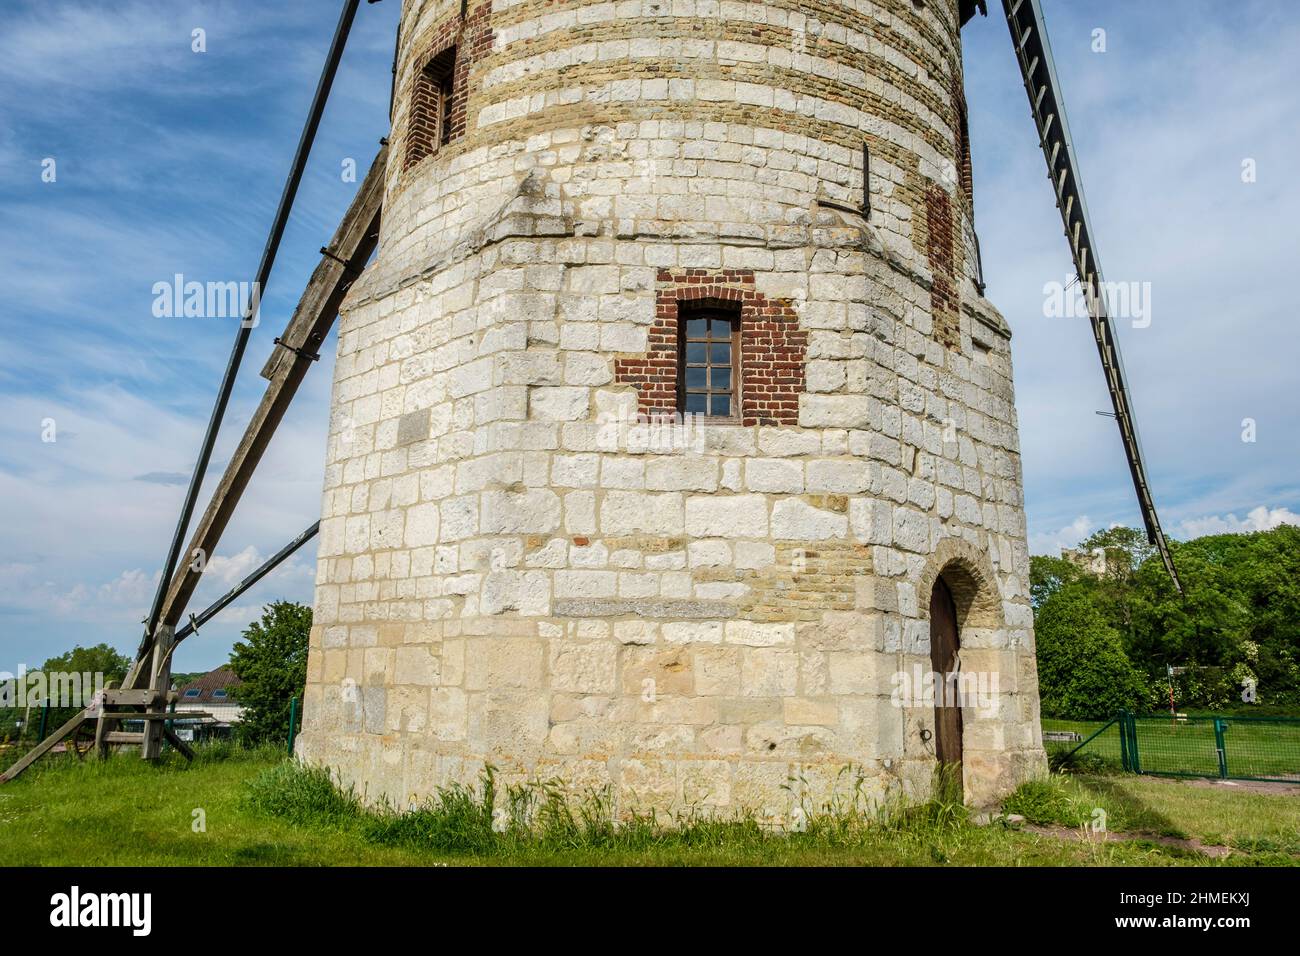 La montagne de Watten - le moulin de la montagne a été construit avec des materiaux en provenance de l'ancienne abbaye. Inscrit aux monumenti historiq Foto Stock